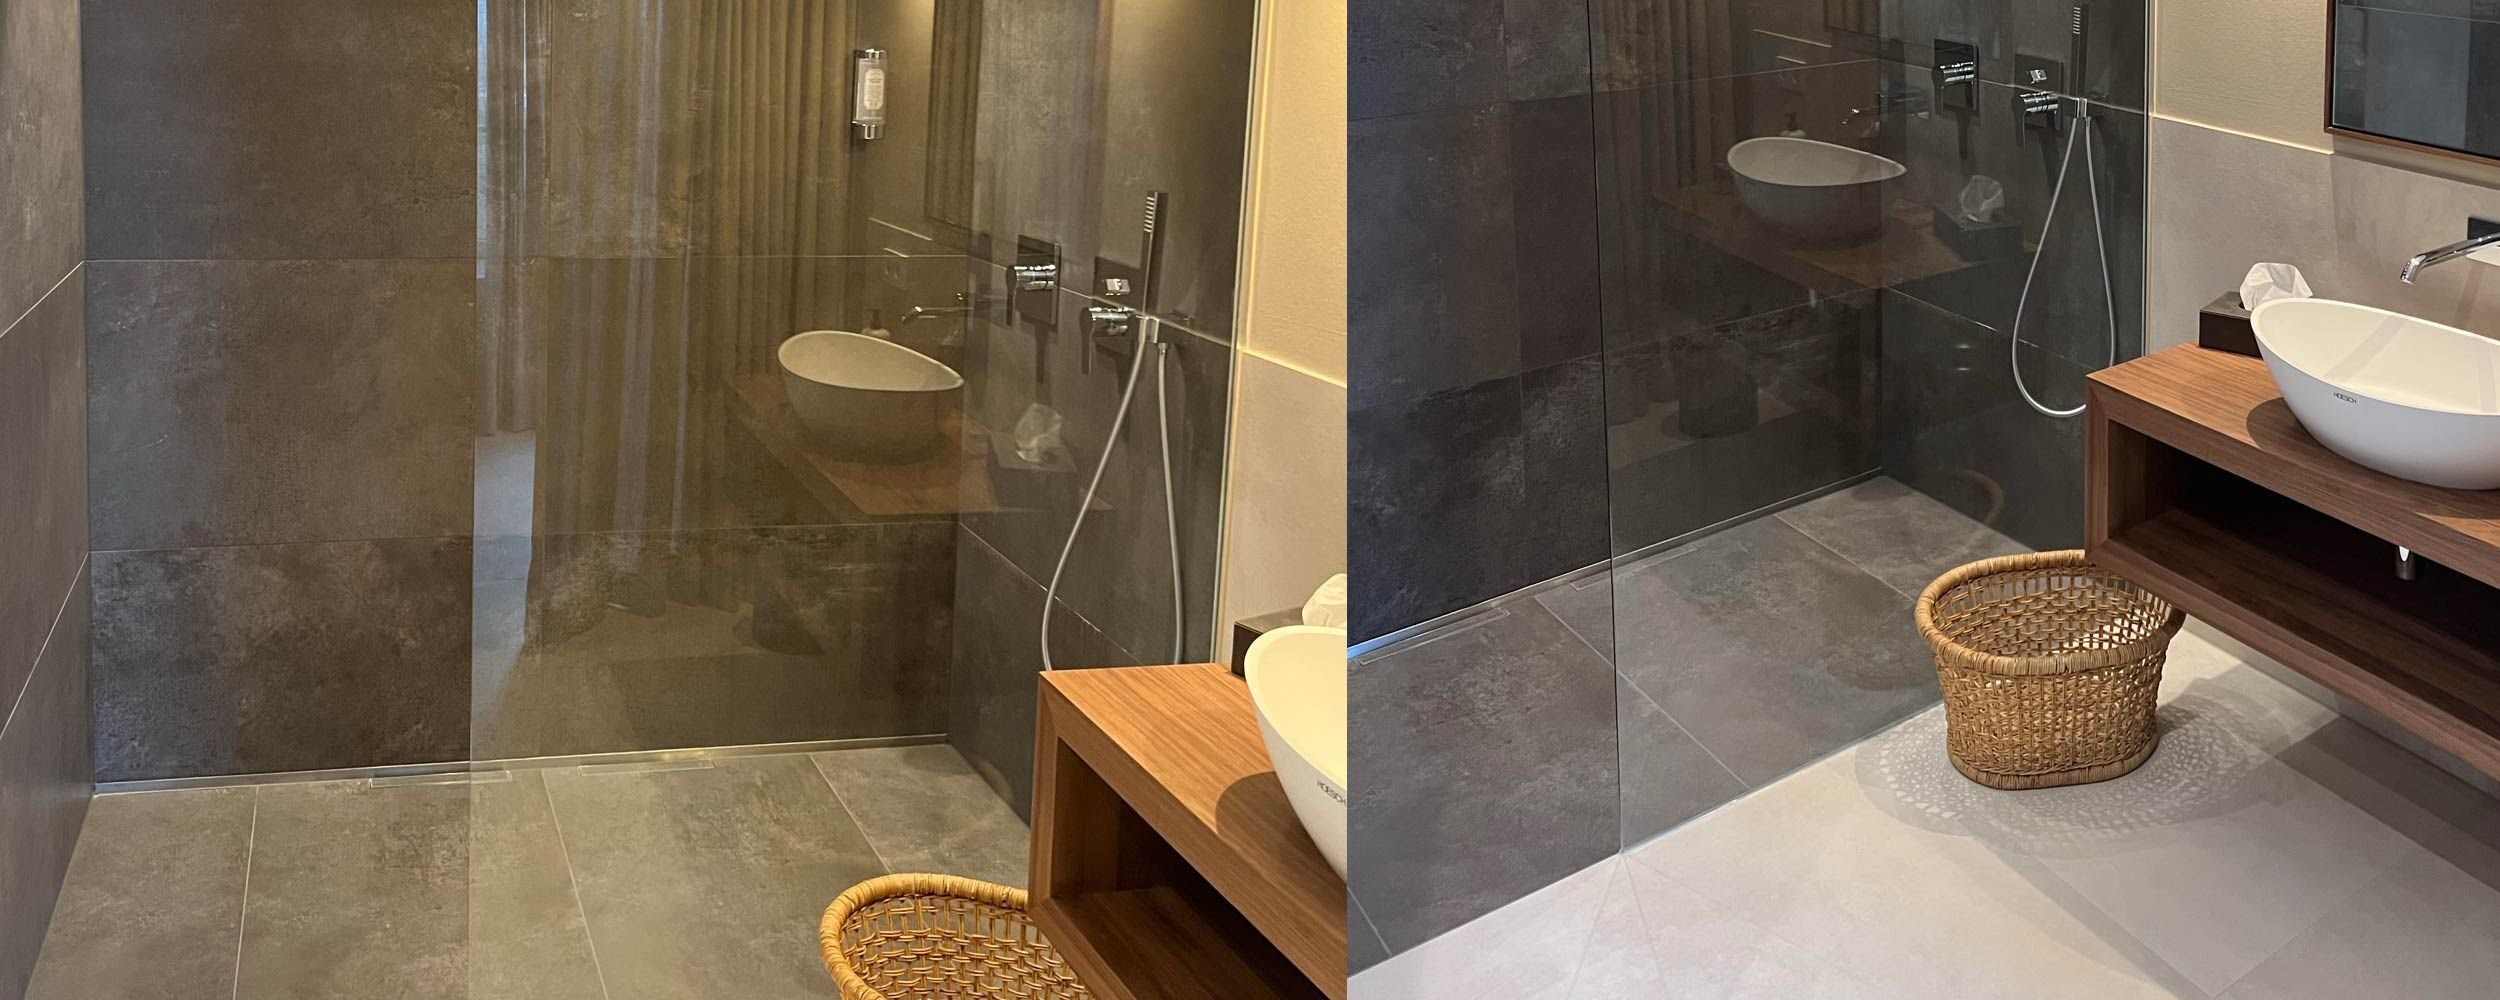 Zwei Bilder einer bodengleichen Dusche aus verschiedenen Perspektiven. Die Dusche ist mit dunklen, großformatigen Fliesen gefliest, der Rest des Bads hell.